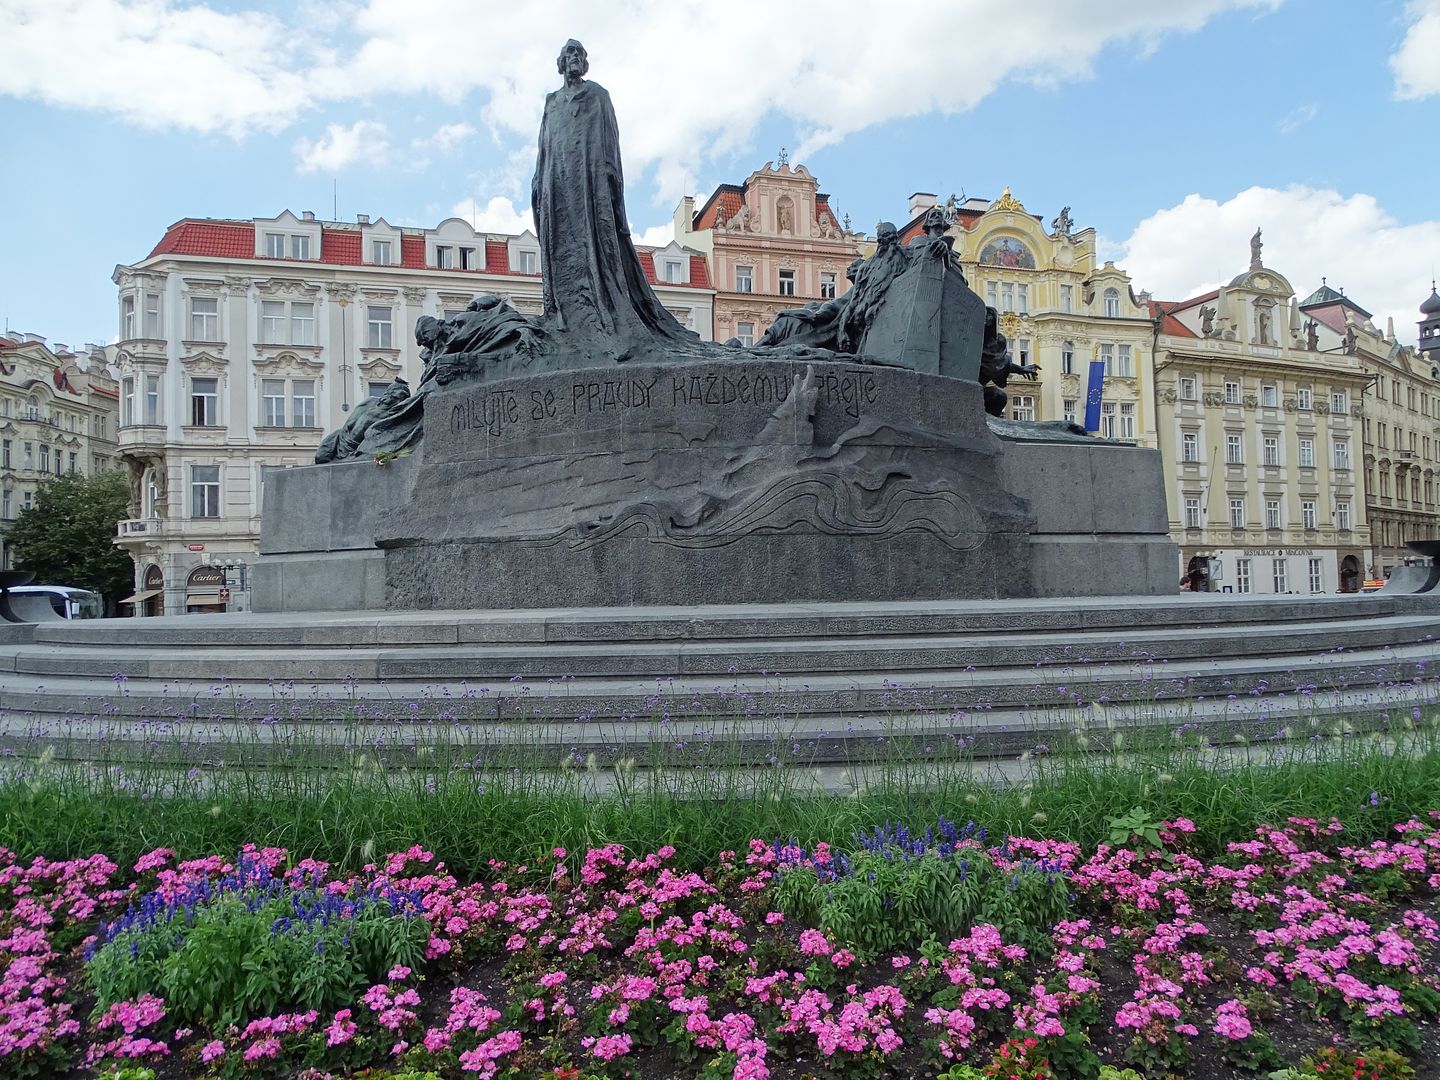 7 días en Praga con escursiones a Dresde (Alemania),Karlovy Vary y Terezin (E.C) - Blogs of Czech Republic - Día 3: Viernes 1 de Julio de 2016 (33)